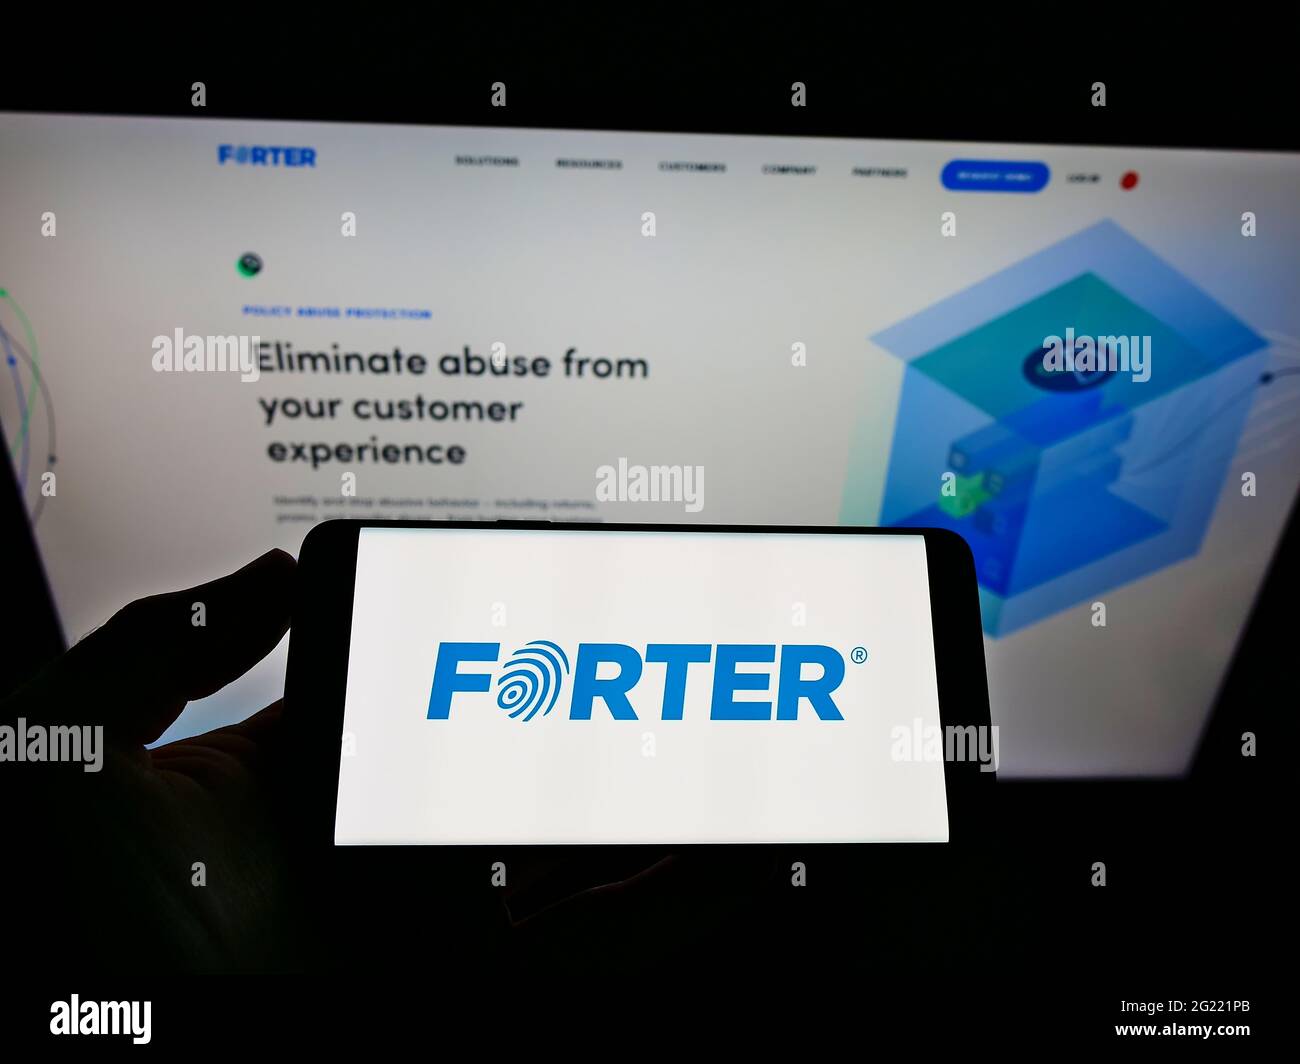 Persona che tiene il cellulare con il logo della società di software per la prevenzione delle frodi Forter Inc. Sullo schermo di fronte alla pagina web aziendale. Mettere a fuoco il display del telefono. Foto Stock